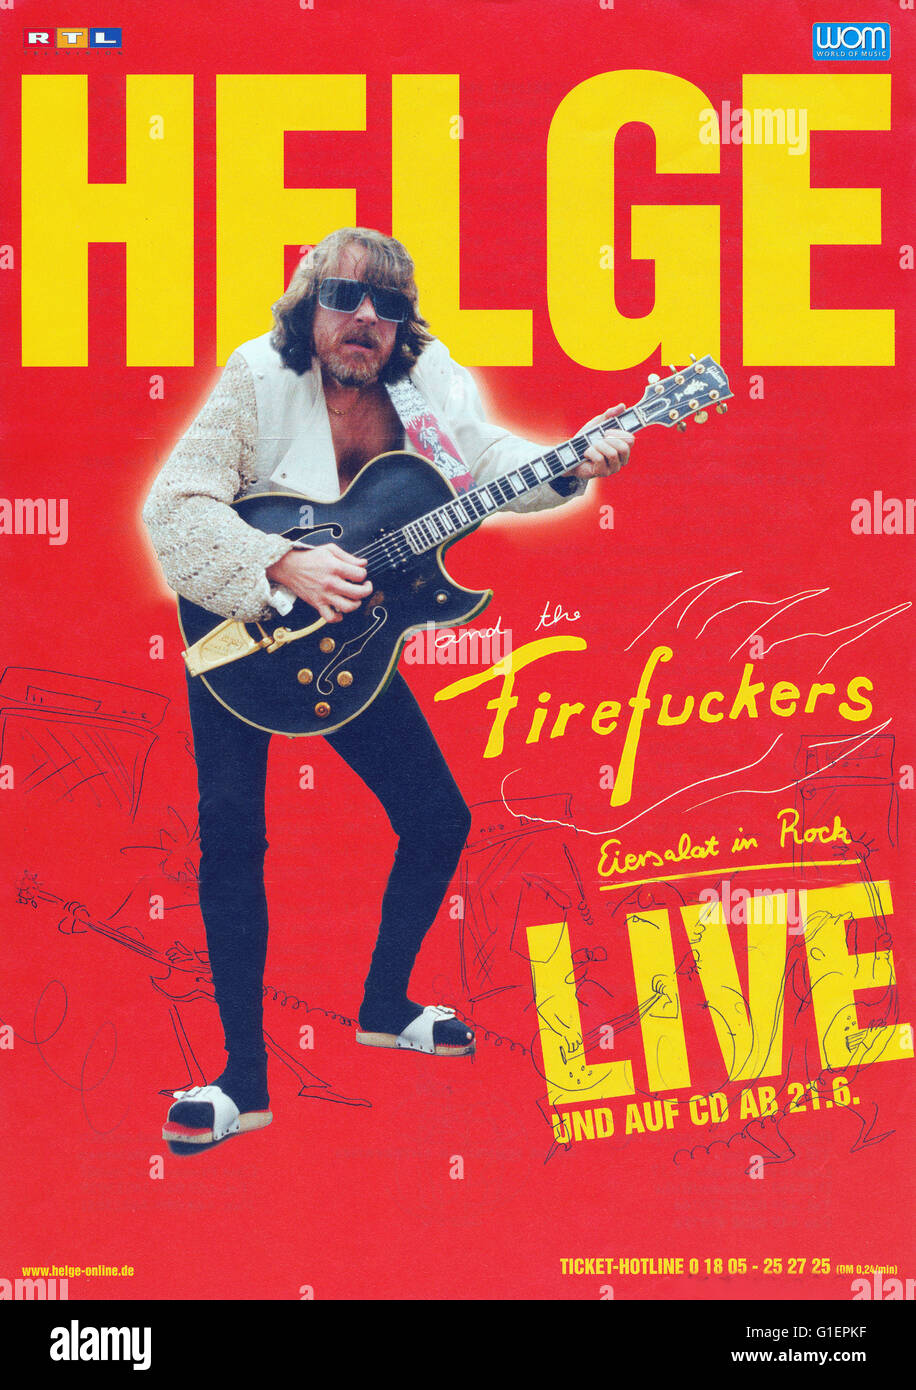 Tourplakat von Helge Schneider zum Programm 'Eiersalat in Rock' mit den Firefuckers, Deutschland 1990er Jahre. Stock Photo